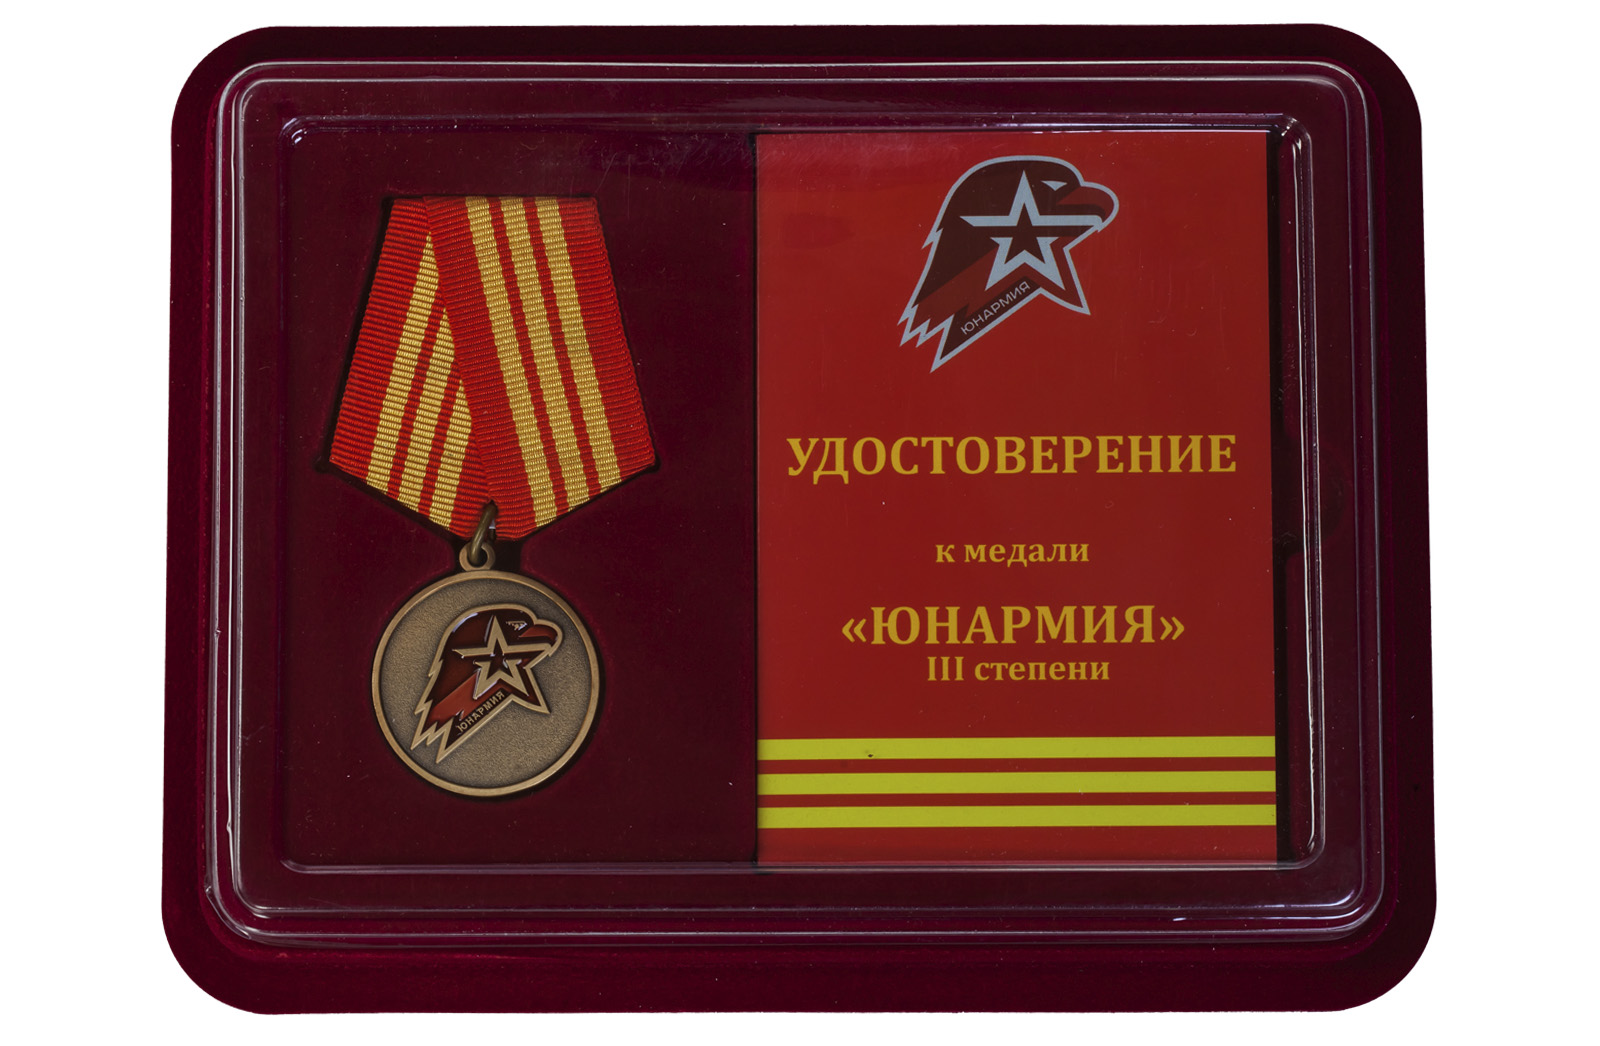 Медаль "Юнармия" 3 степени заказать оптом и в розницу